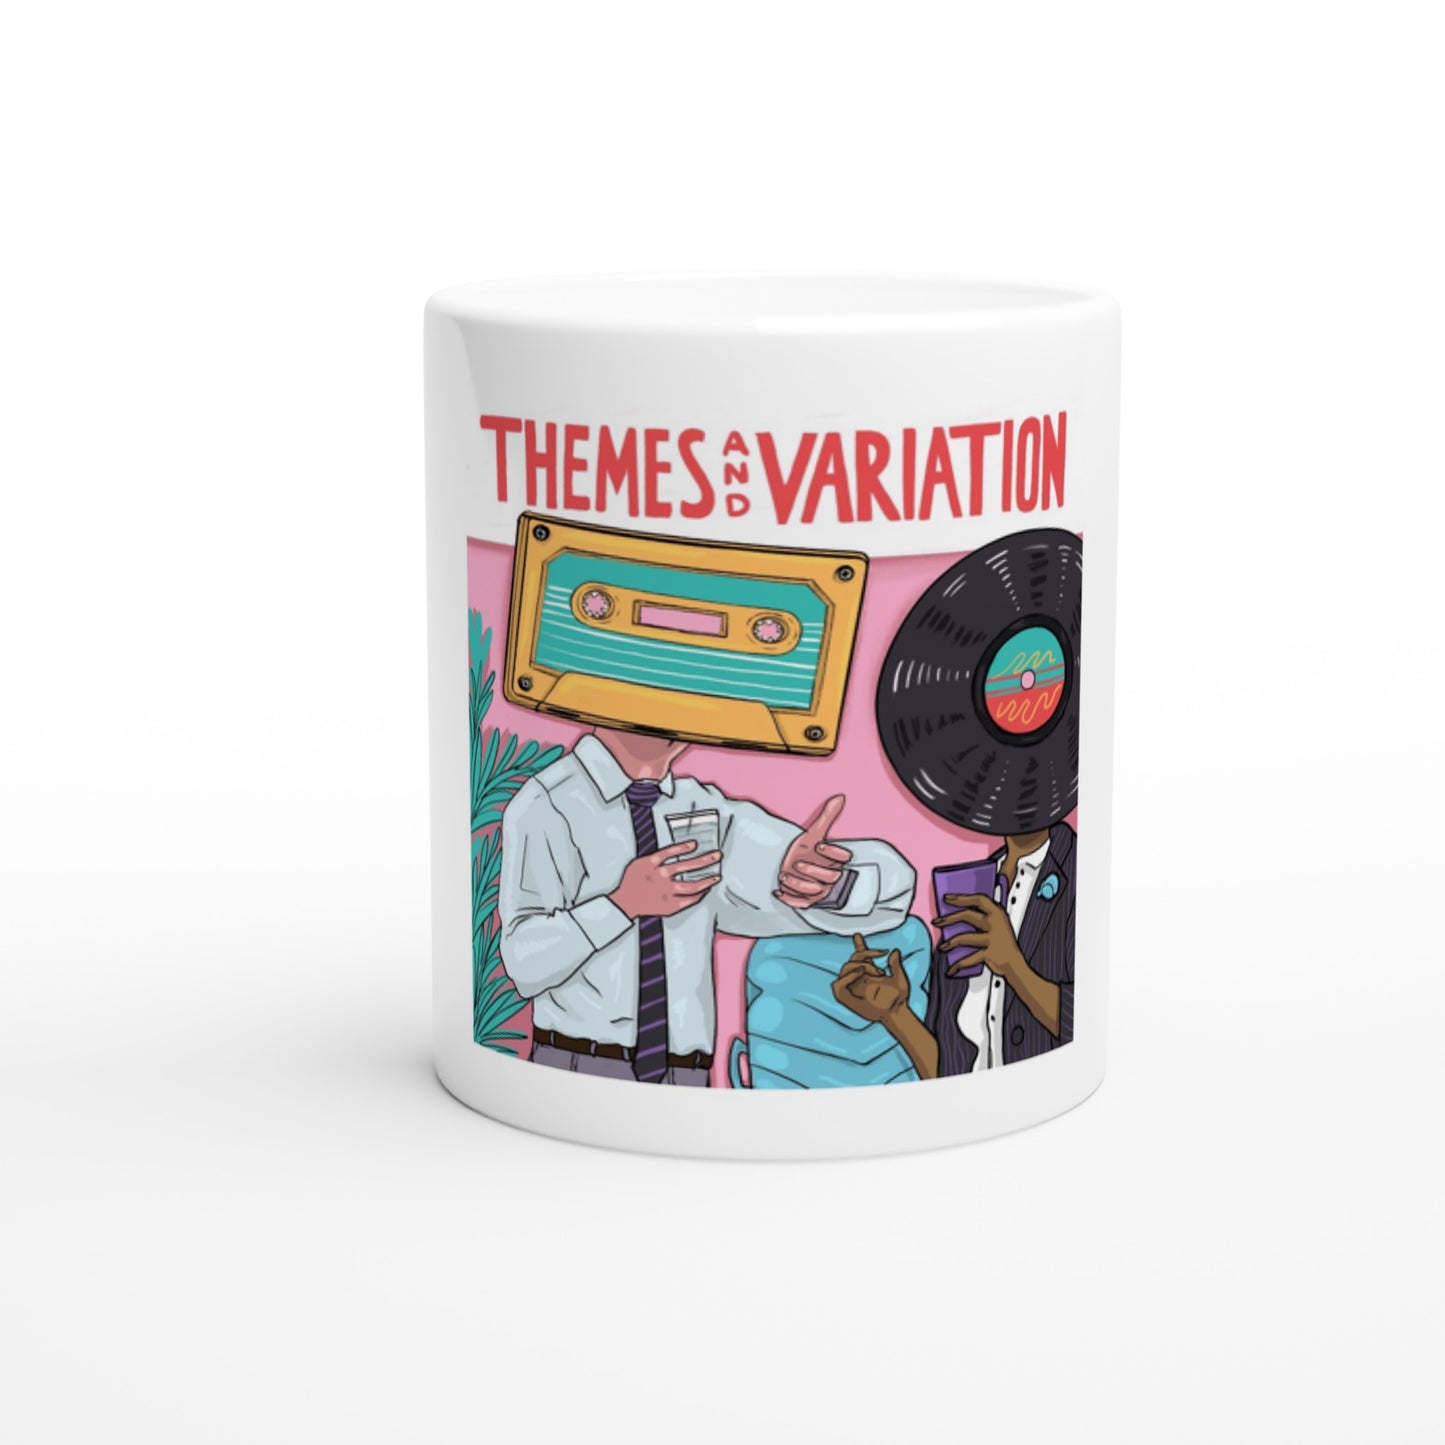 Themes & Variation Mug